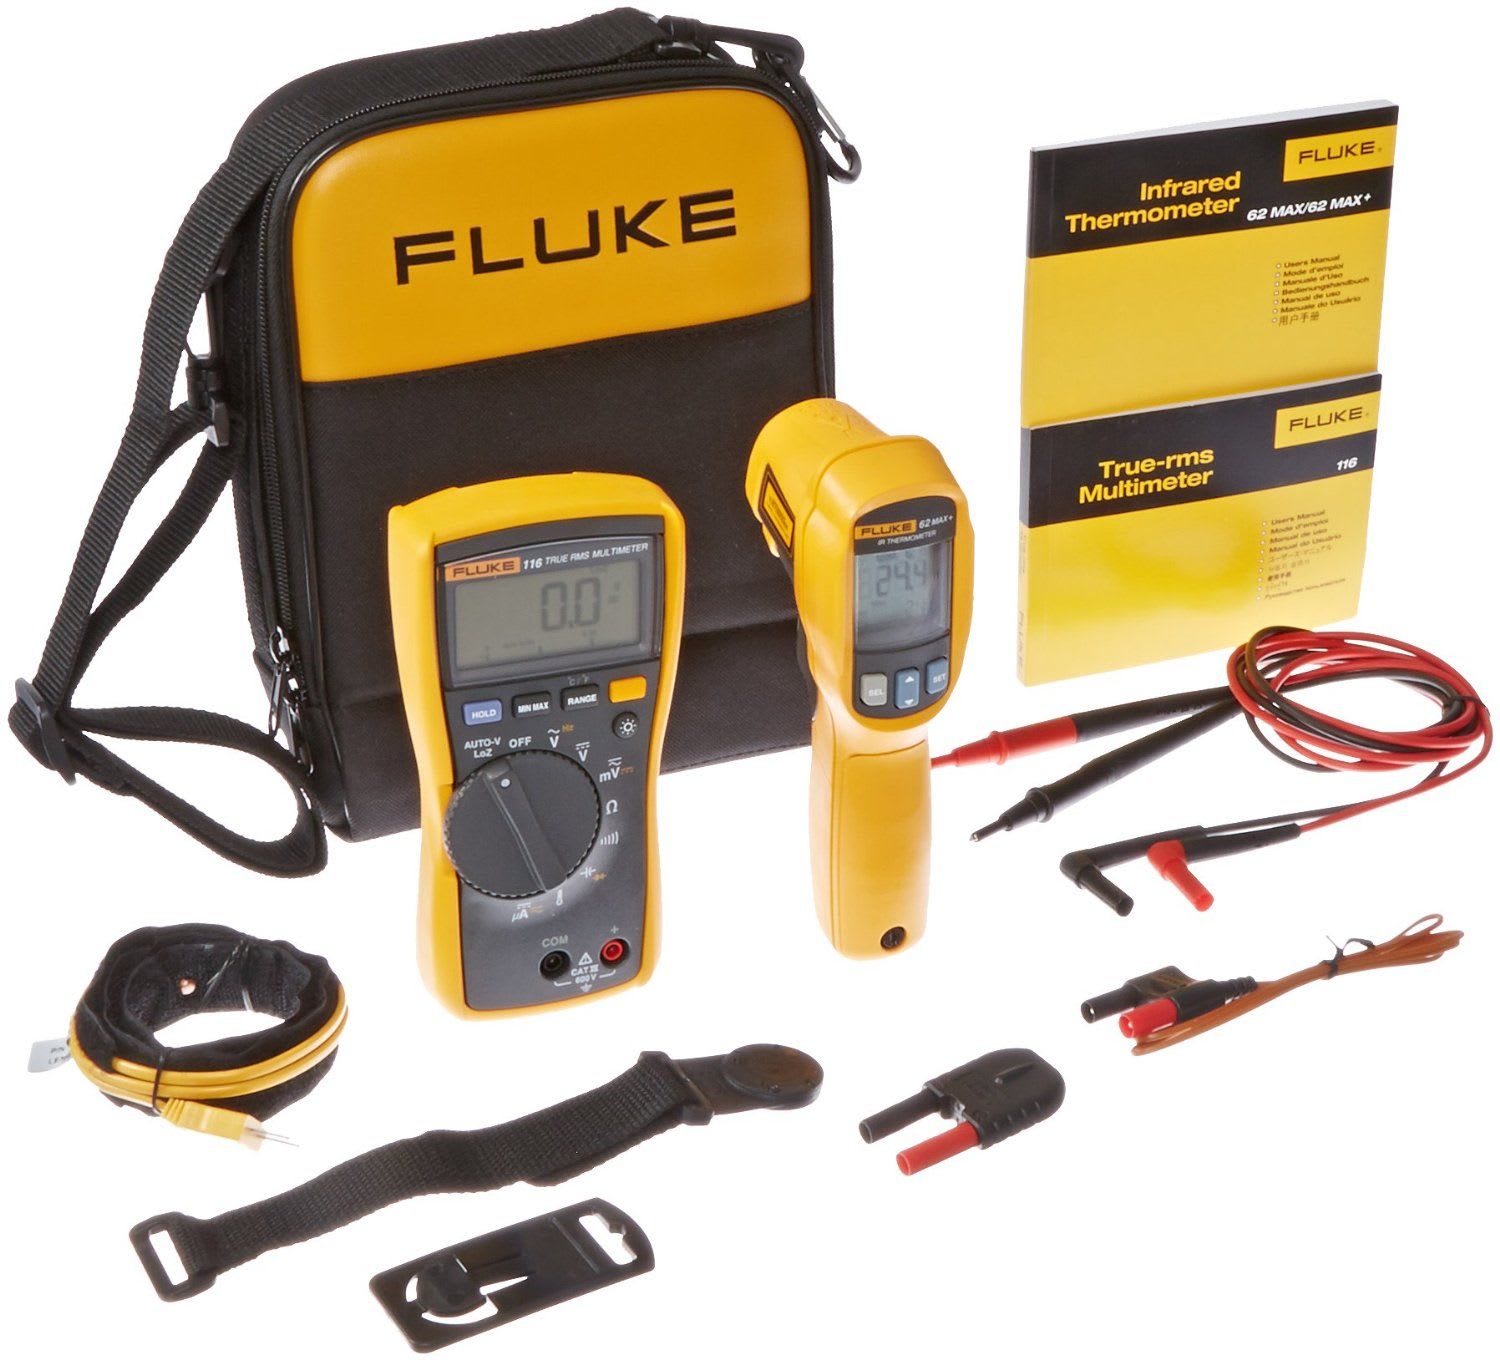 Fluke - Fluke-116/62 MAX+ Kit HVAC avec multimètre Fluke-116 et thermom IR Fluke-62 MAX+